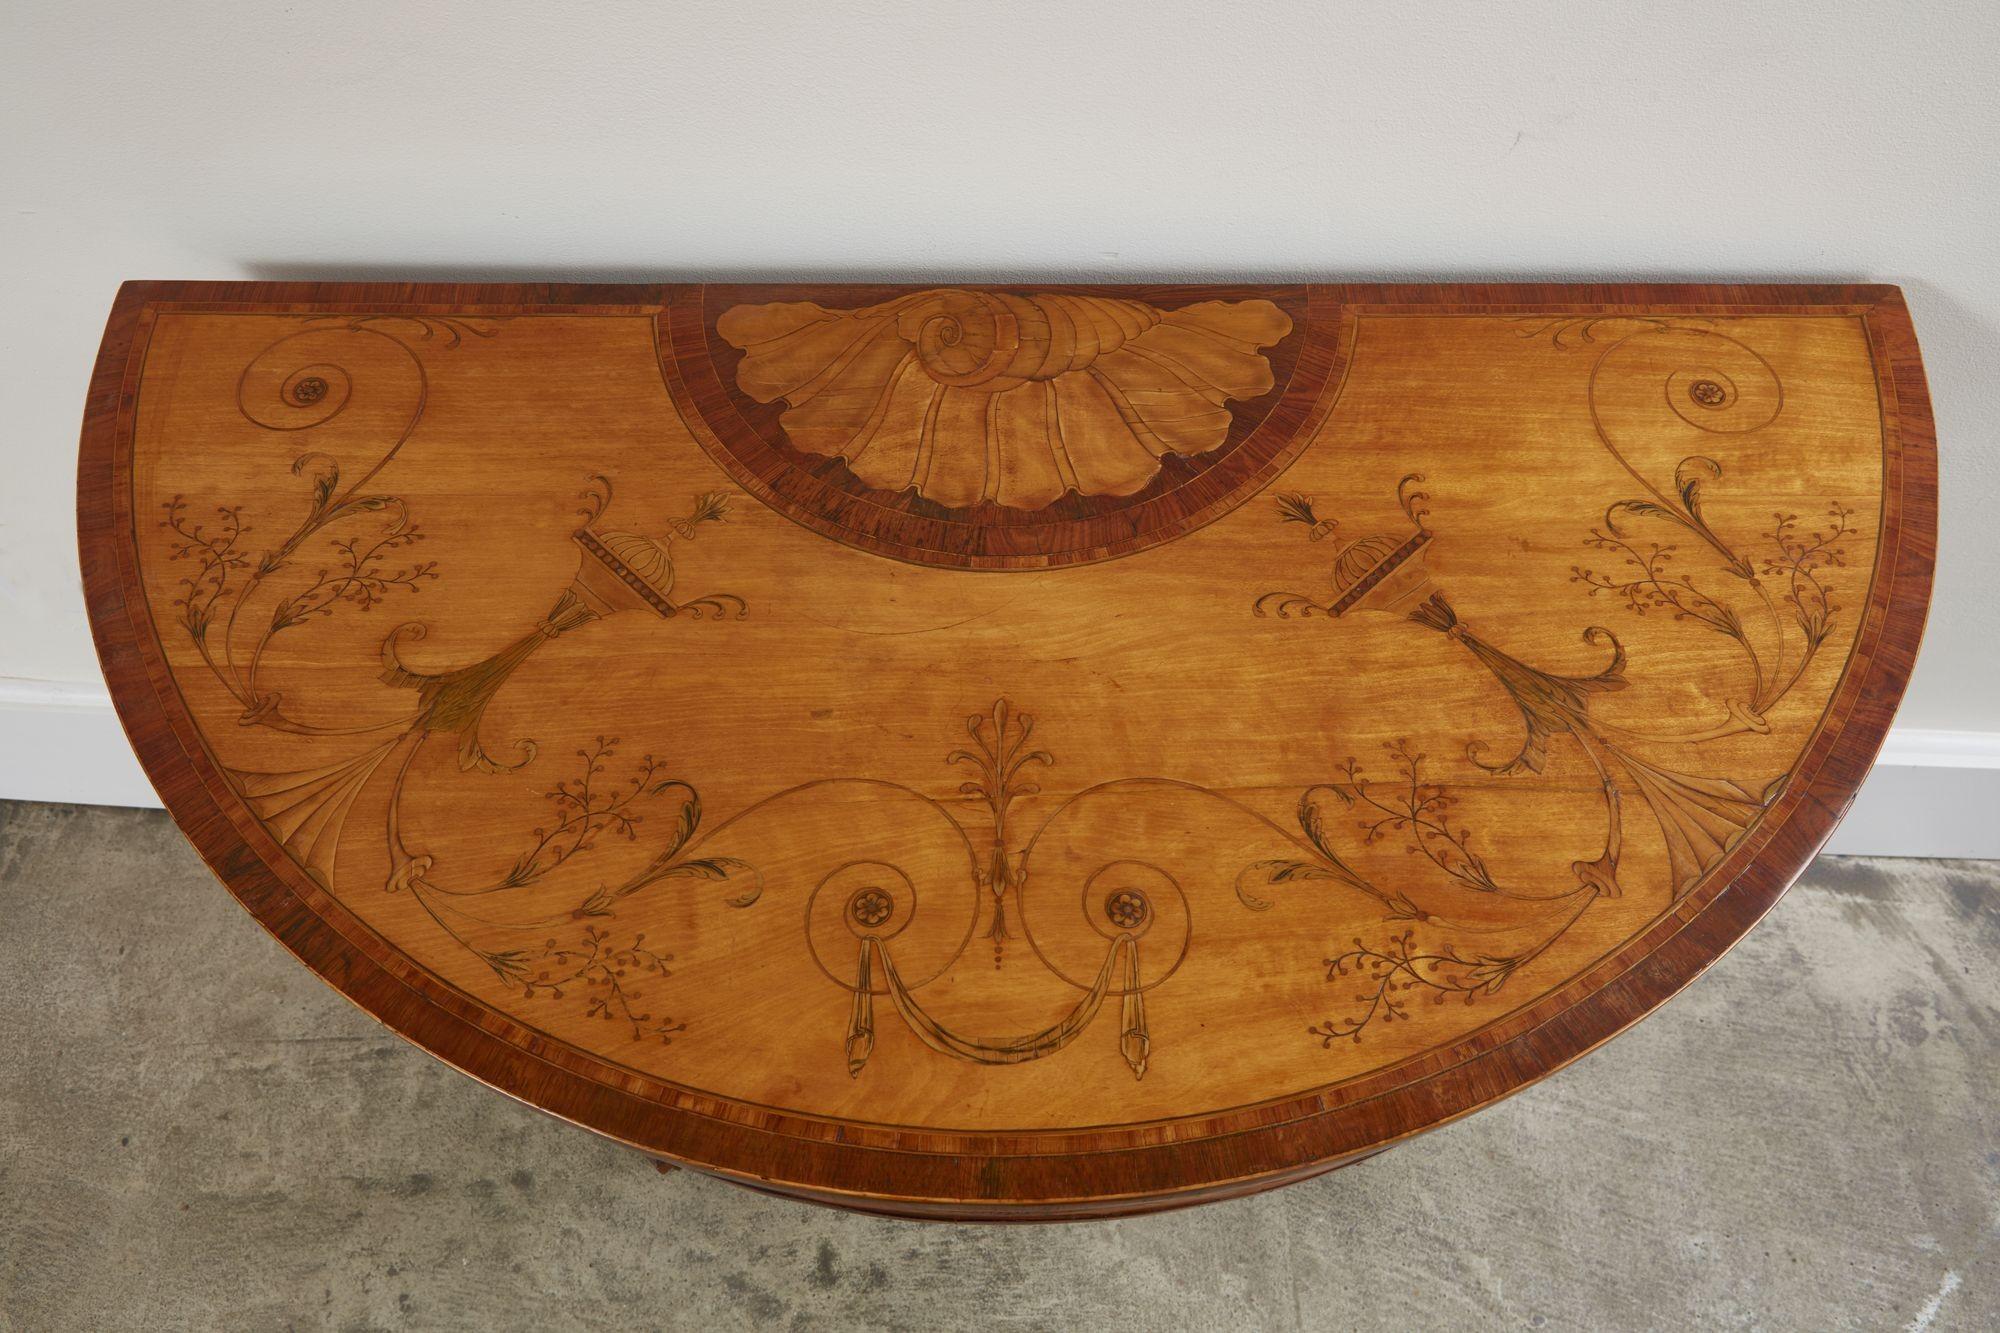 Sehr feiner, Mayhew und Ince zugeschriebener Kartentisch aus satiniertem Holz mit Intarsien aus George III. Die Platte ist reichlich mit Muscheln, Urnen, Säcken, Geißblatt und anderen neoklassizistischen Motiven intarsiert, die Schürze ist mit